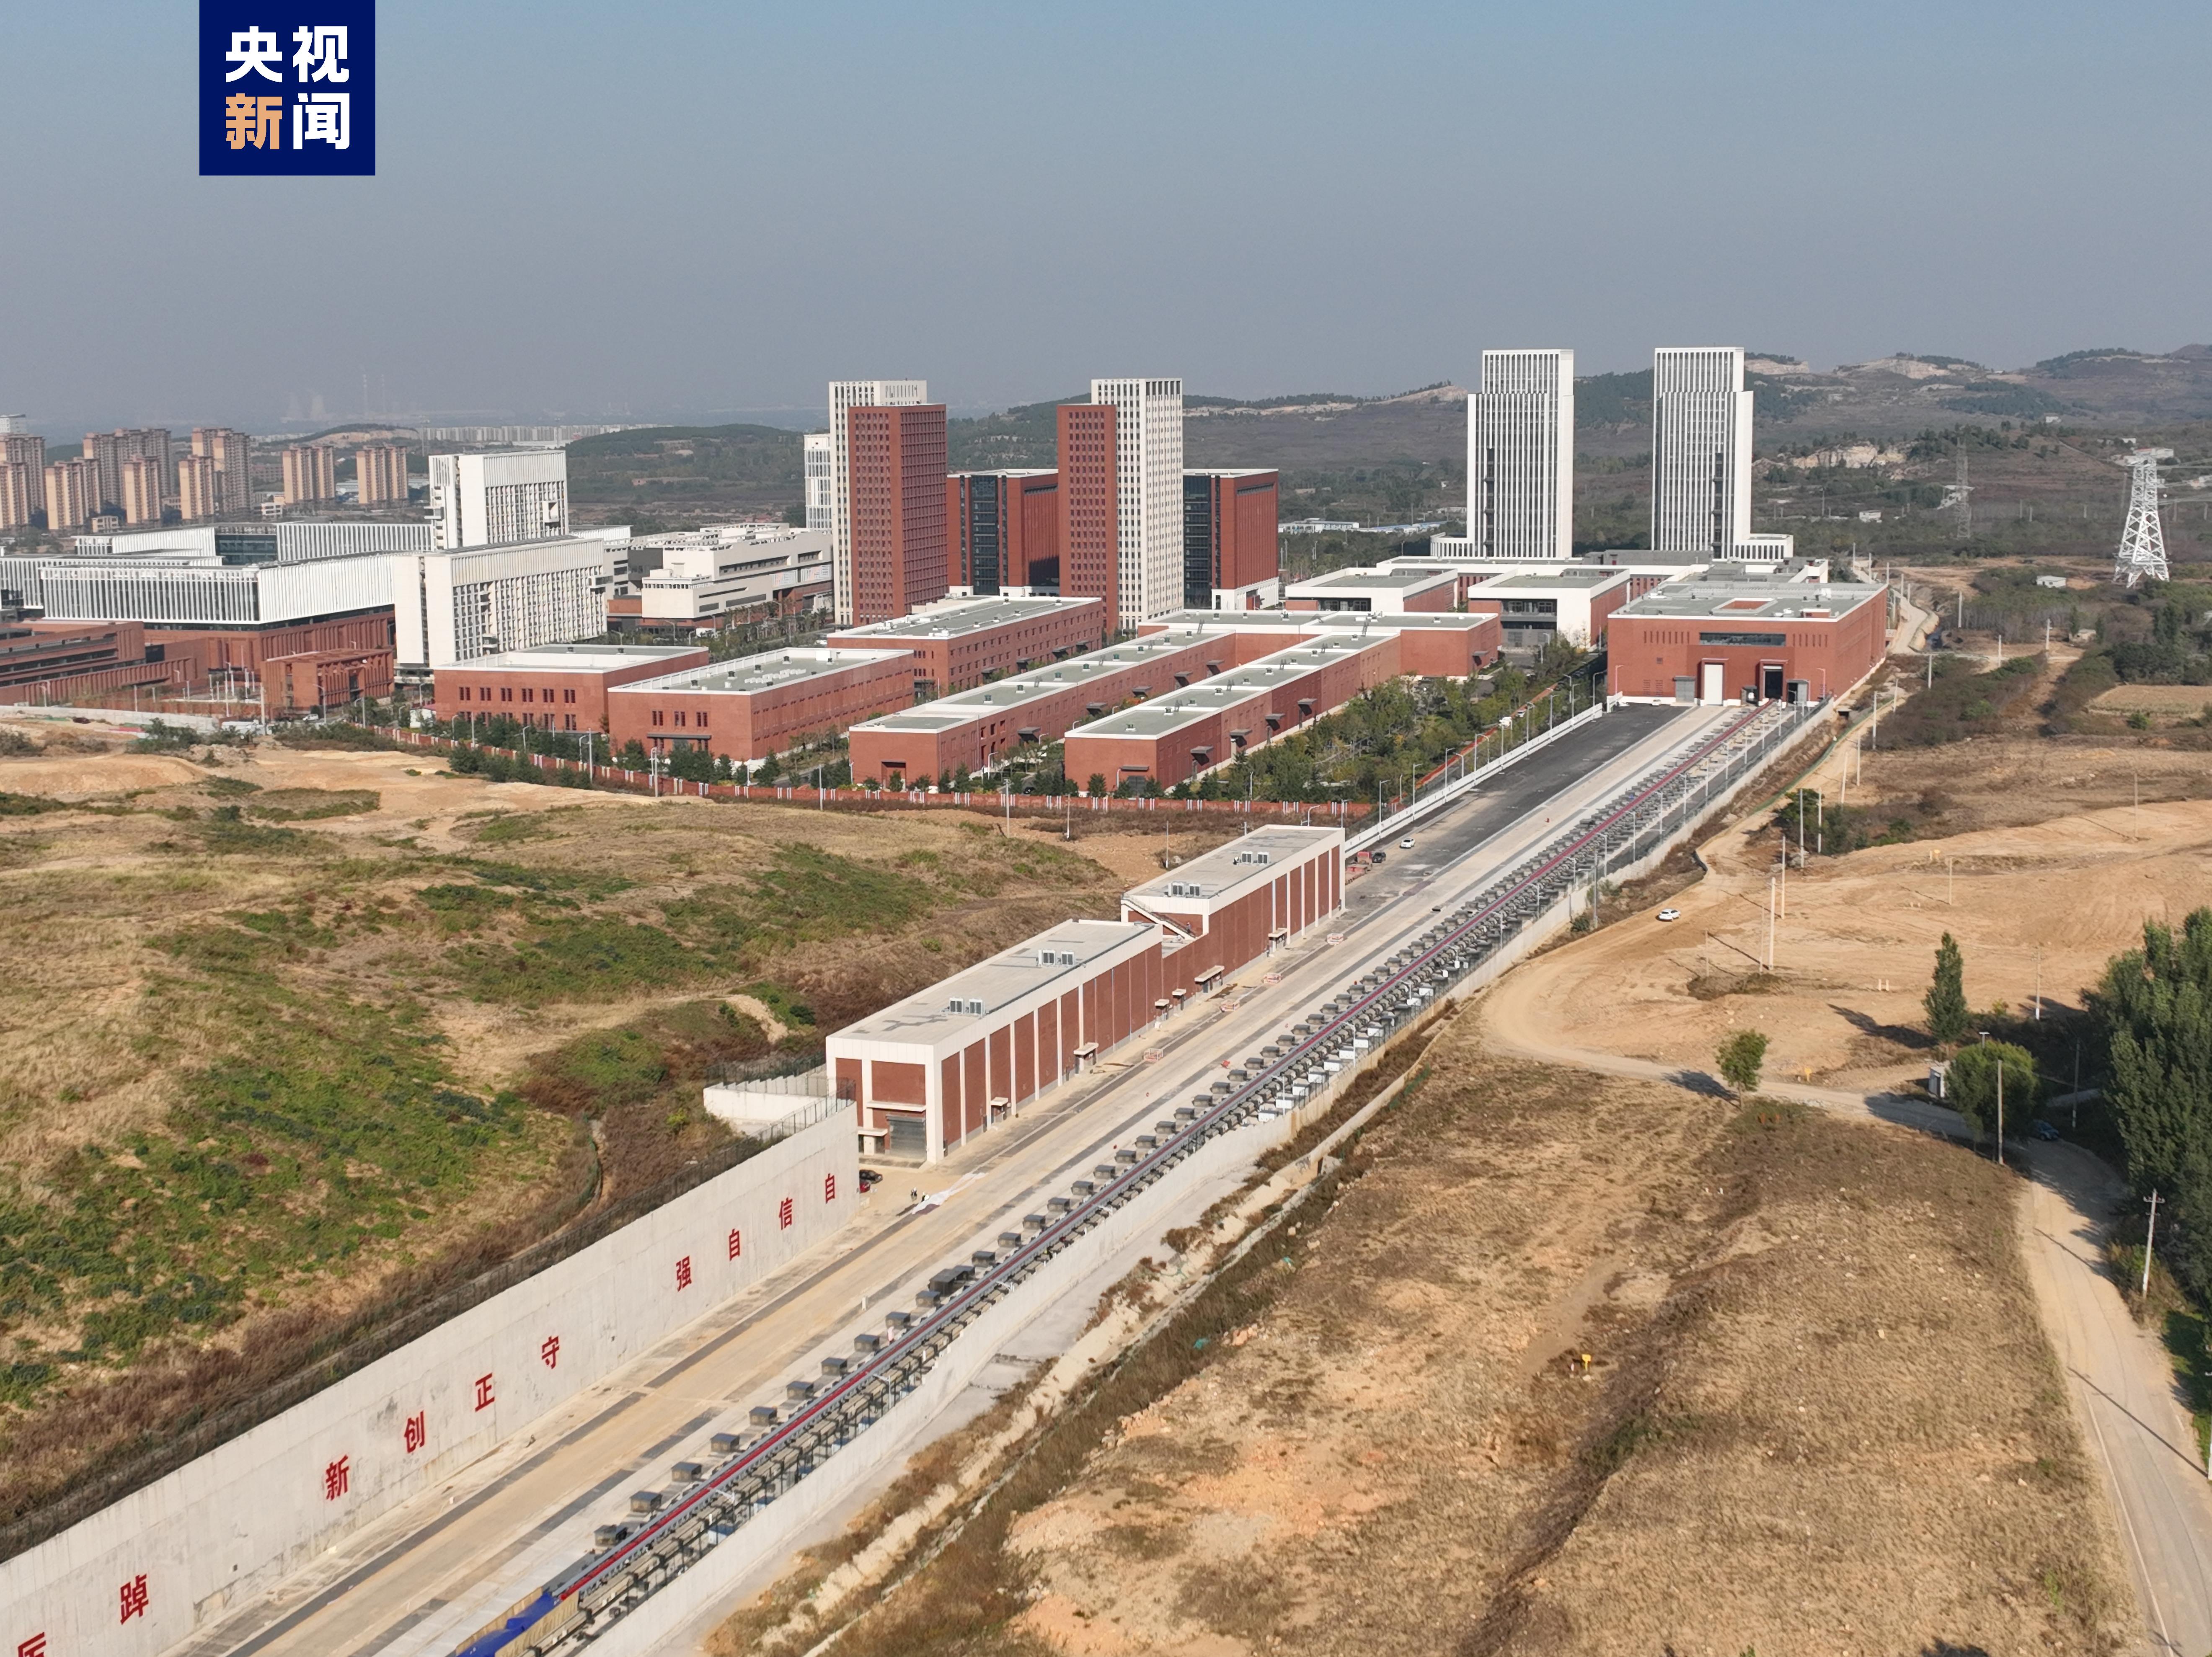 Pusat Uji Kecepatan Kendaraan Dibuka di Jinan-Image-1